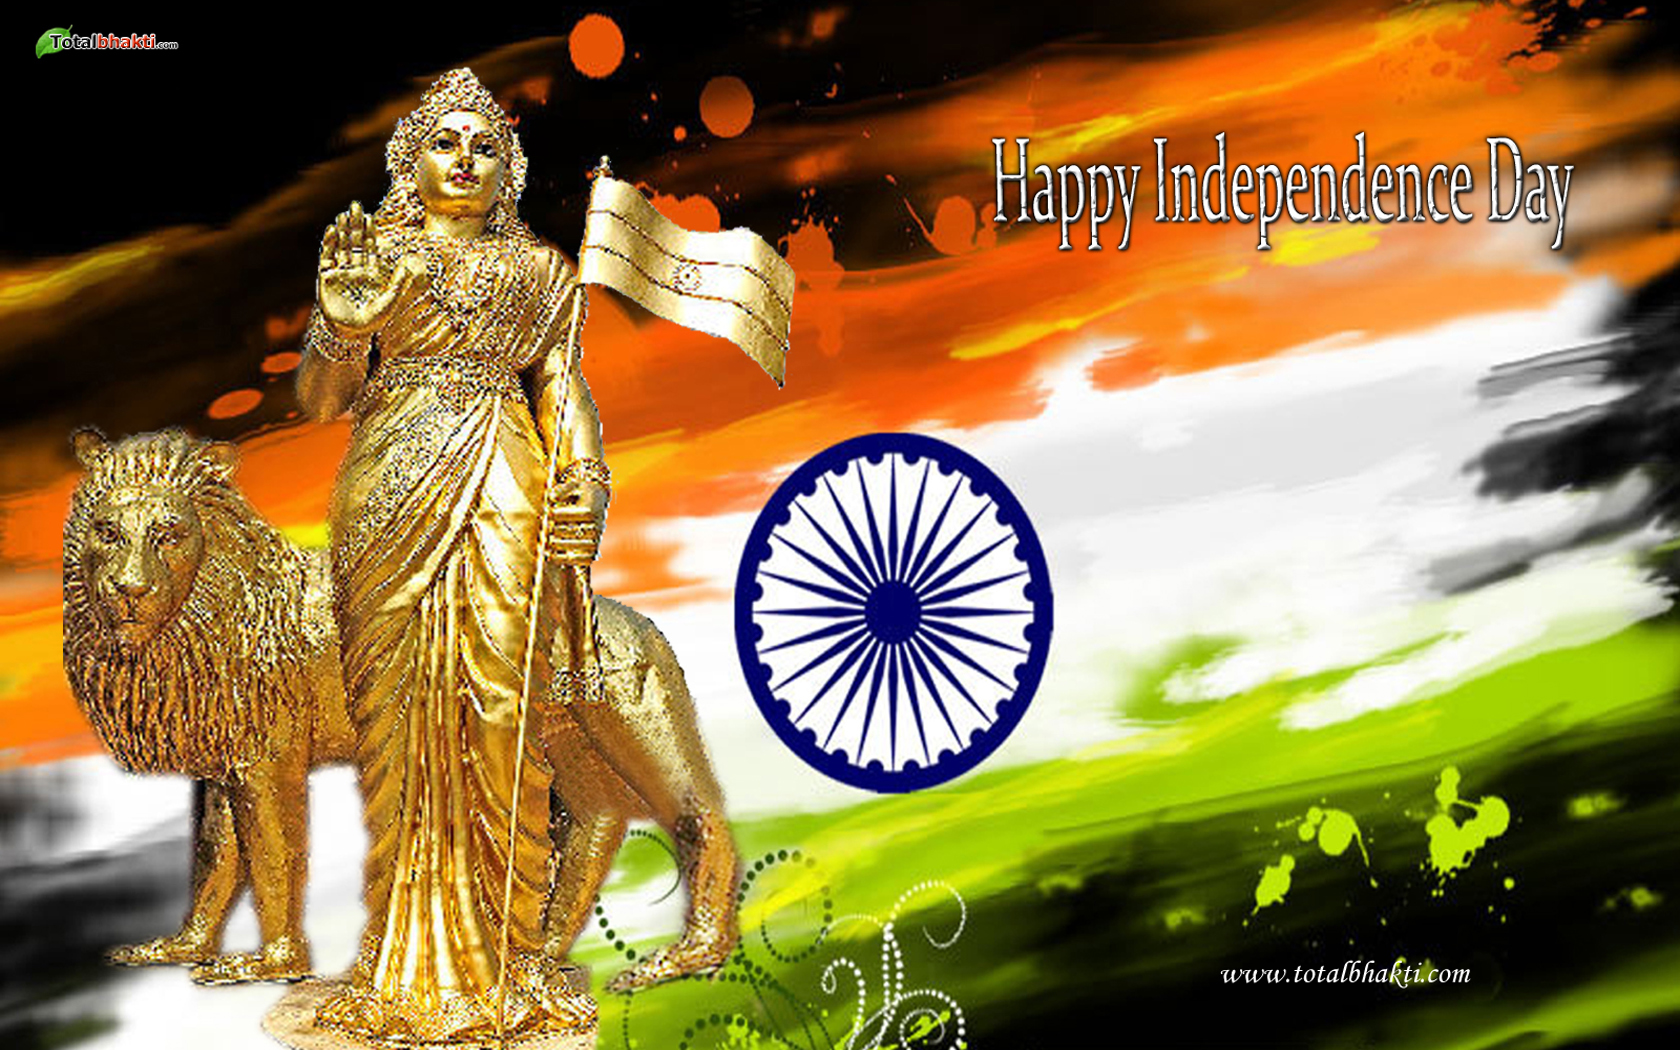 descarga gratuita de fondo de pantalla del día de la independencia india,divertido,gráficos,diseño gráfico,fiesta,mundo